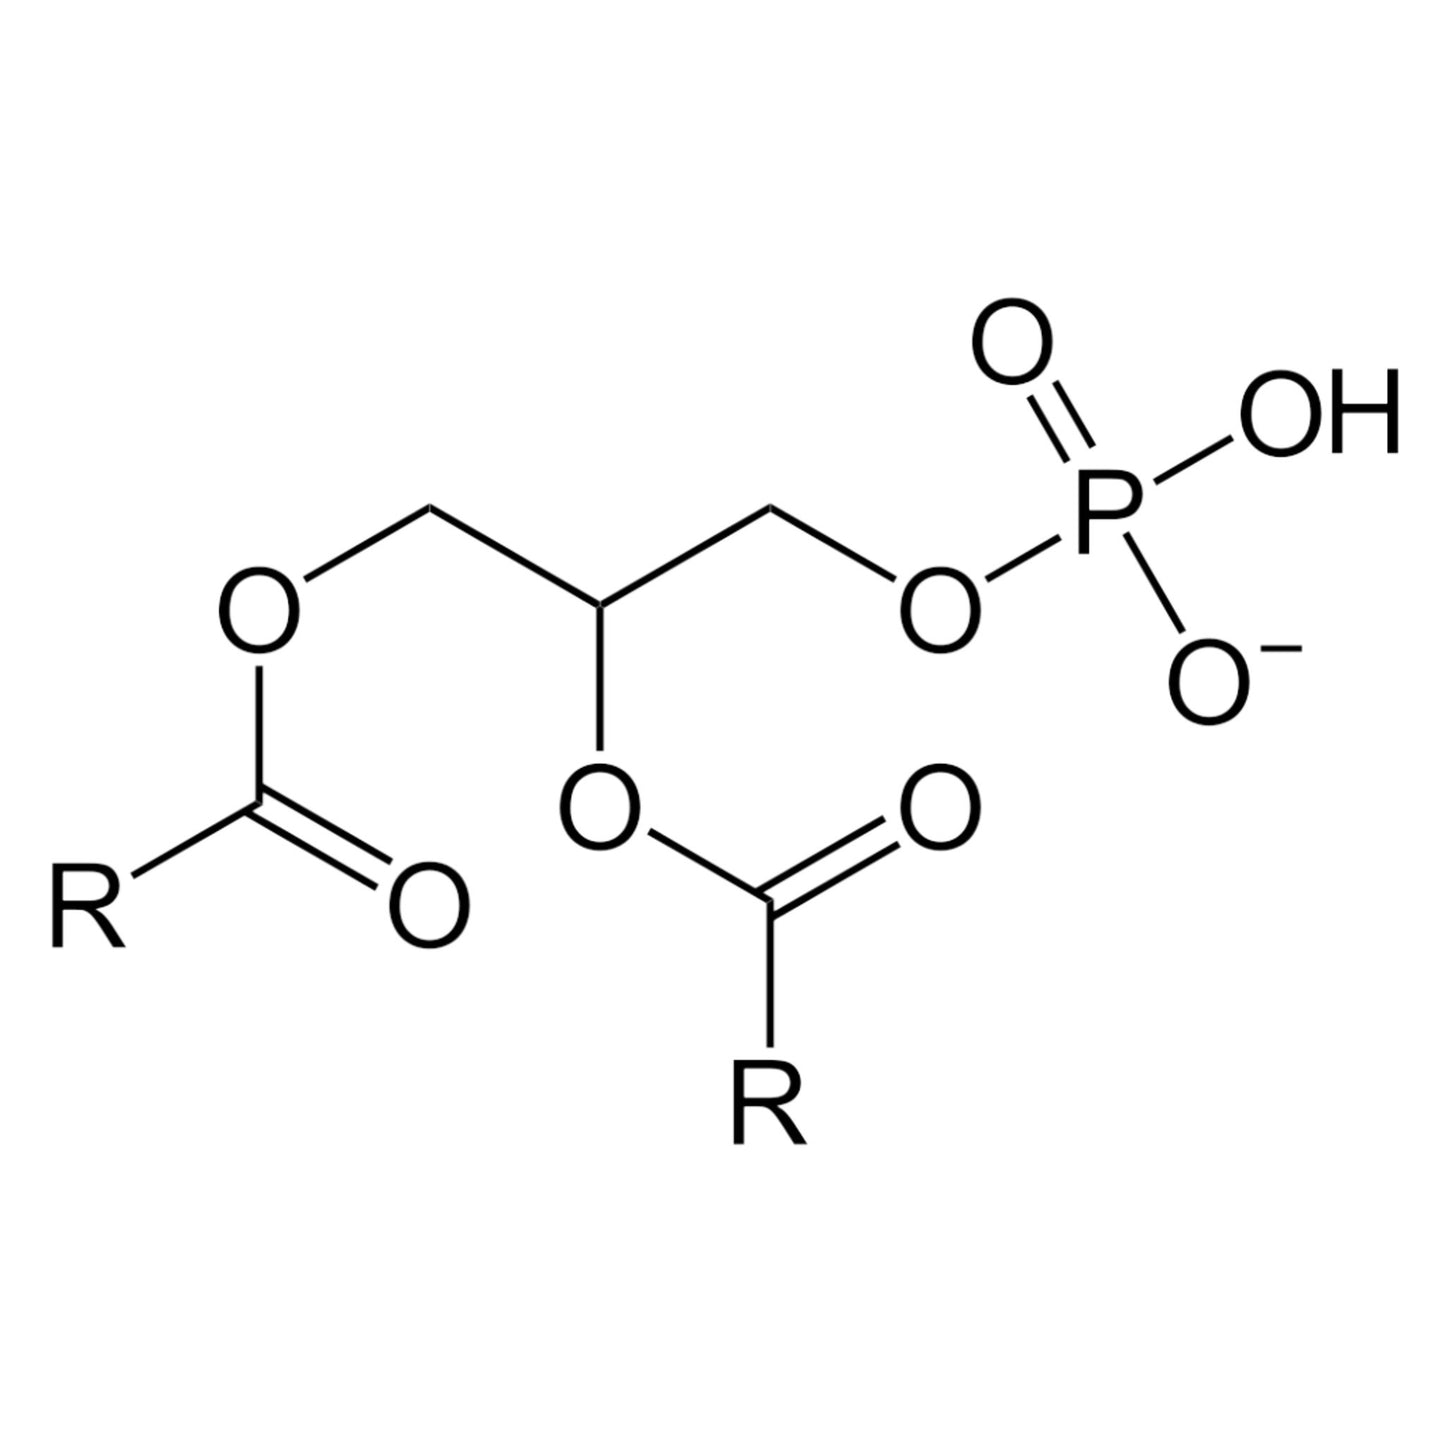 4 Phosphatidyl Serine - Four Ingredients